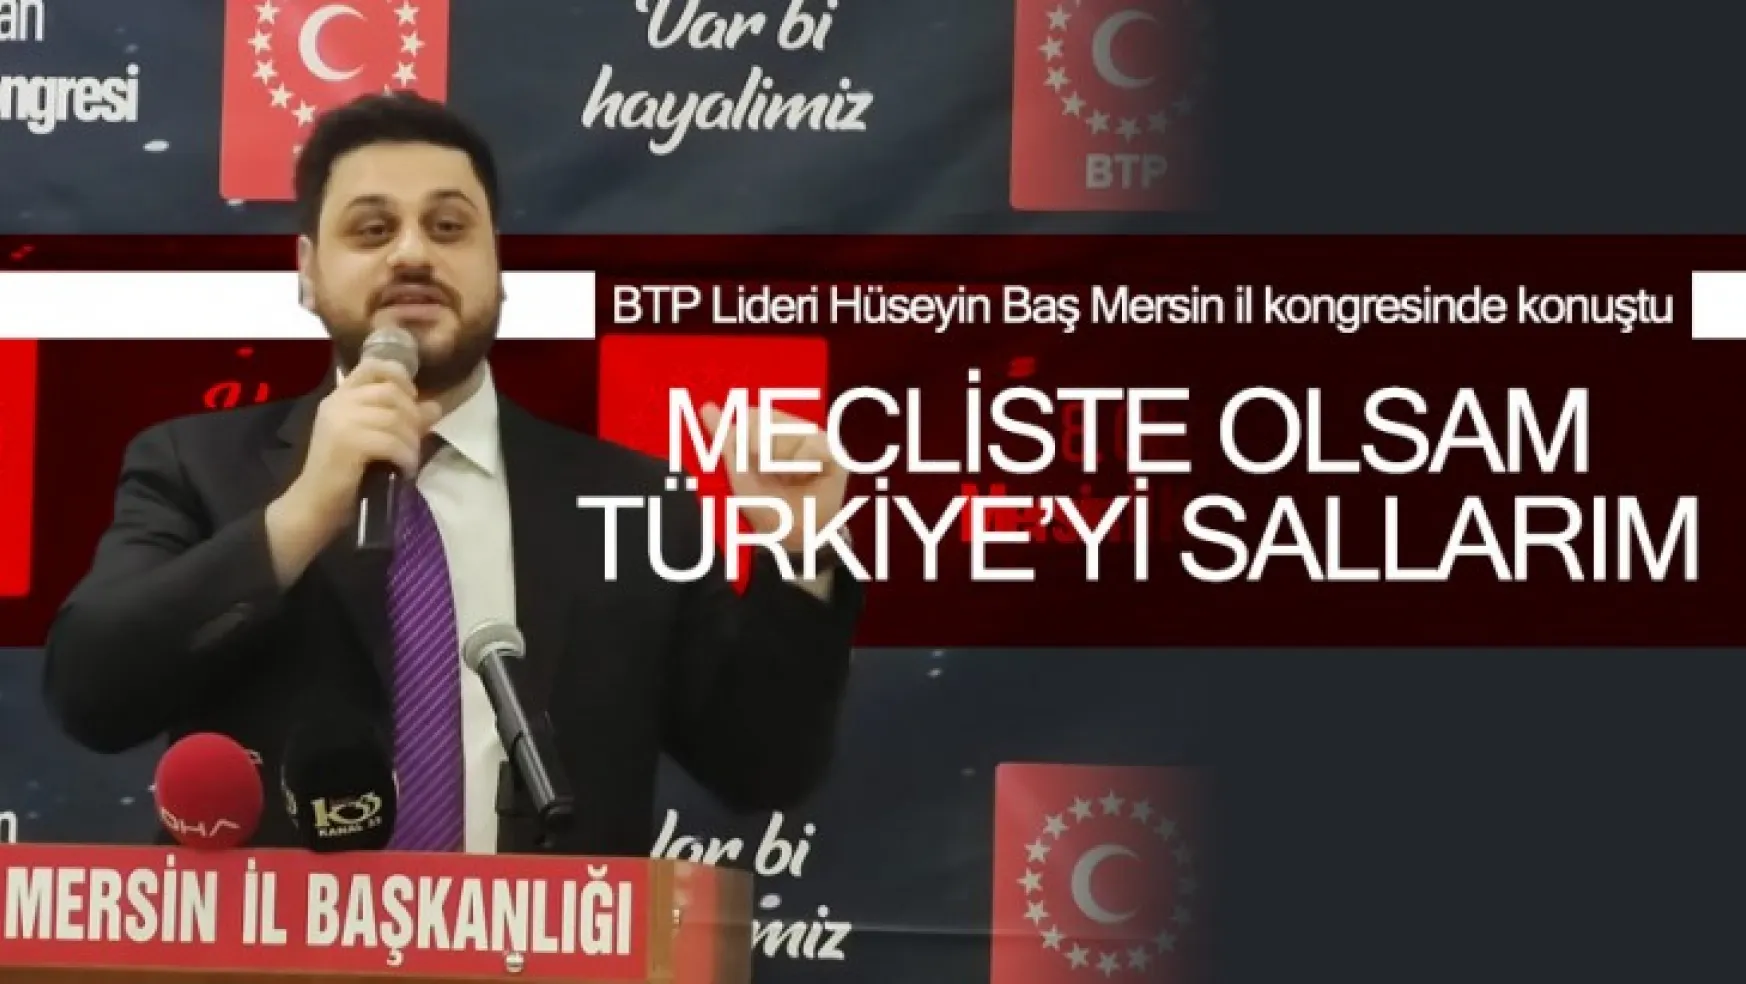 BTP Lideri Hüseyin Baş Mersin il kongresinde konuştu.